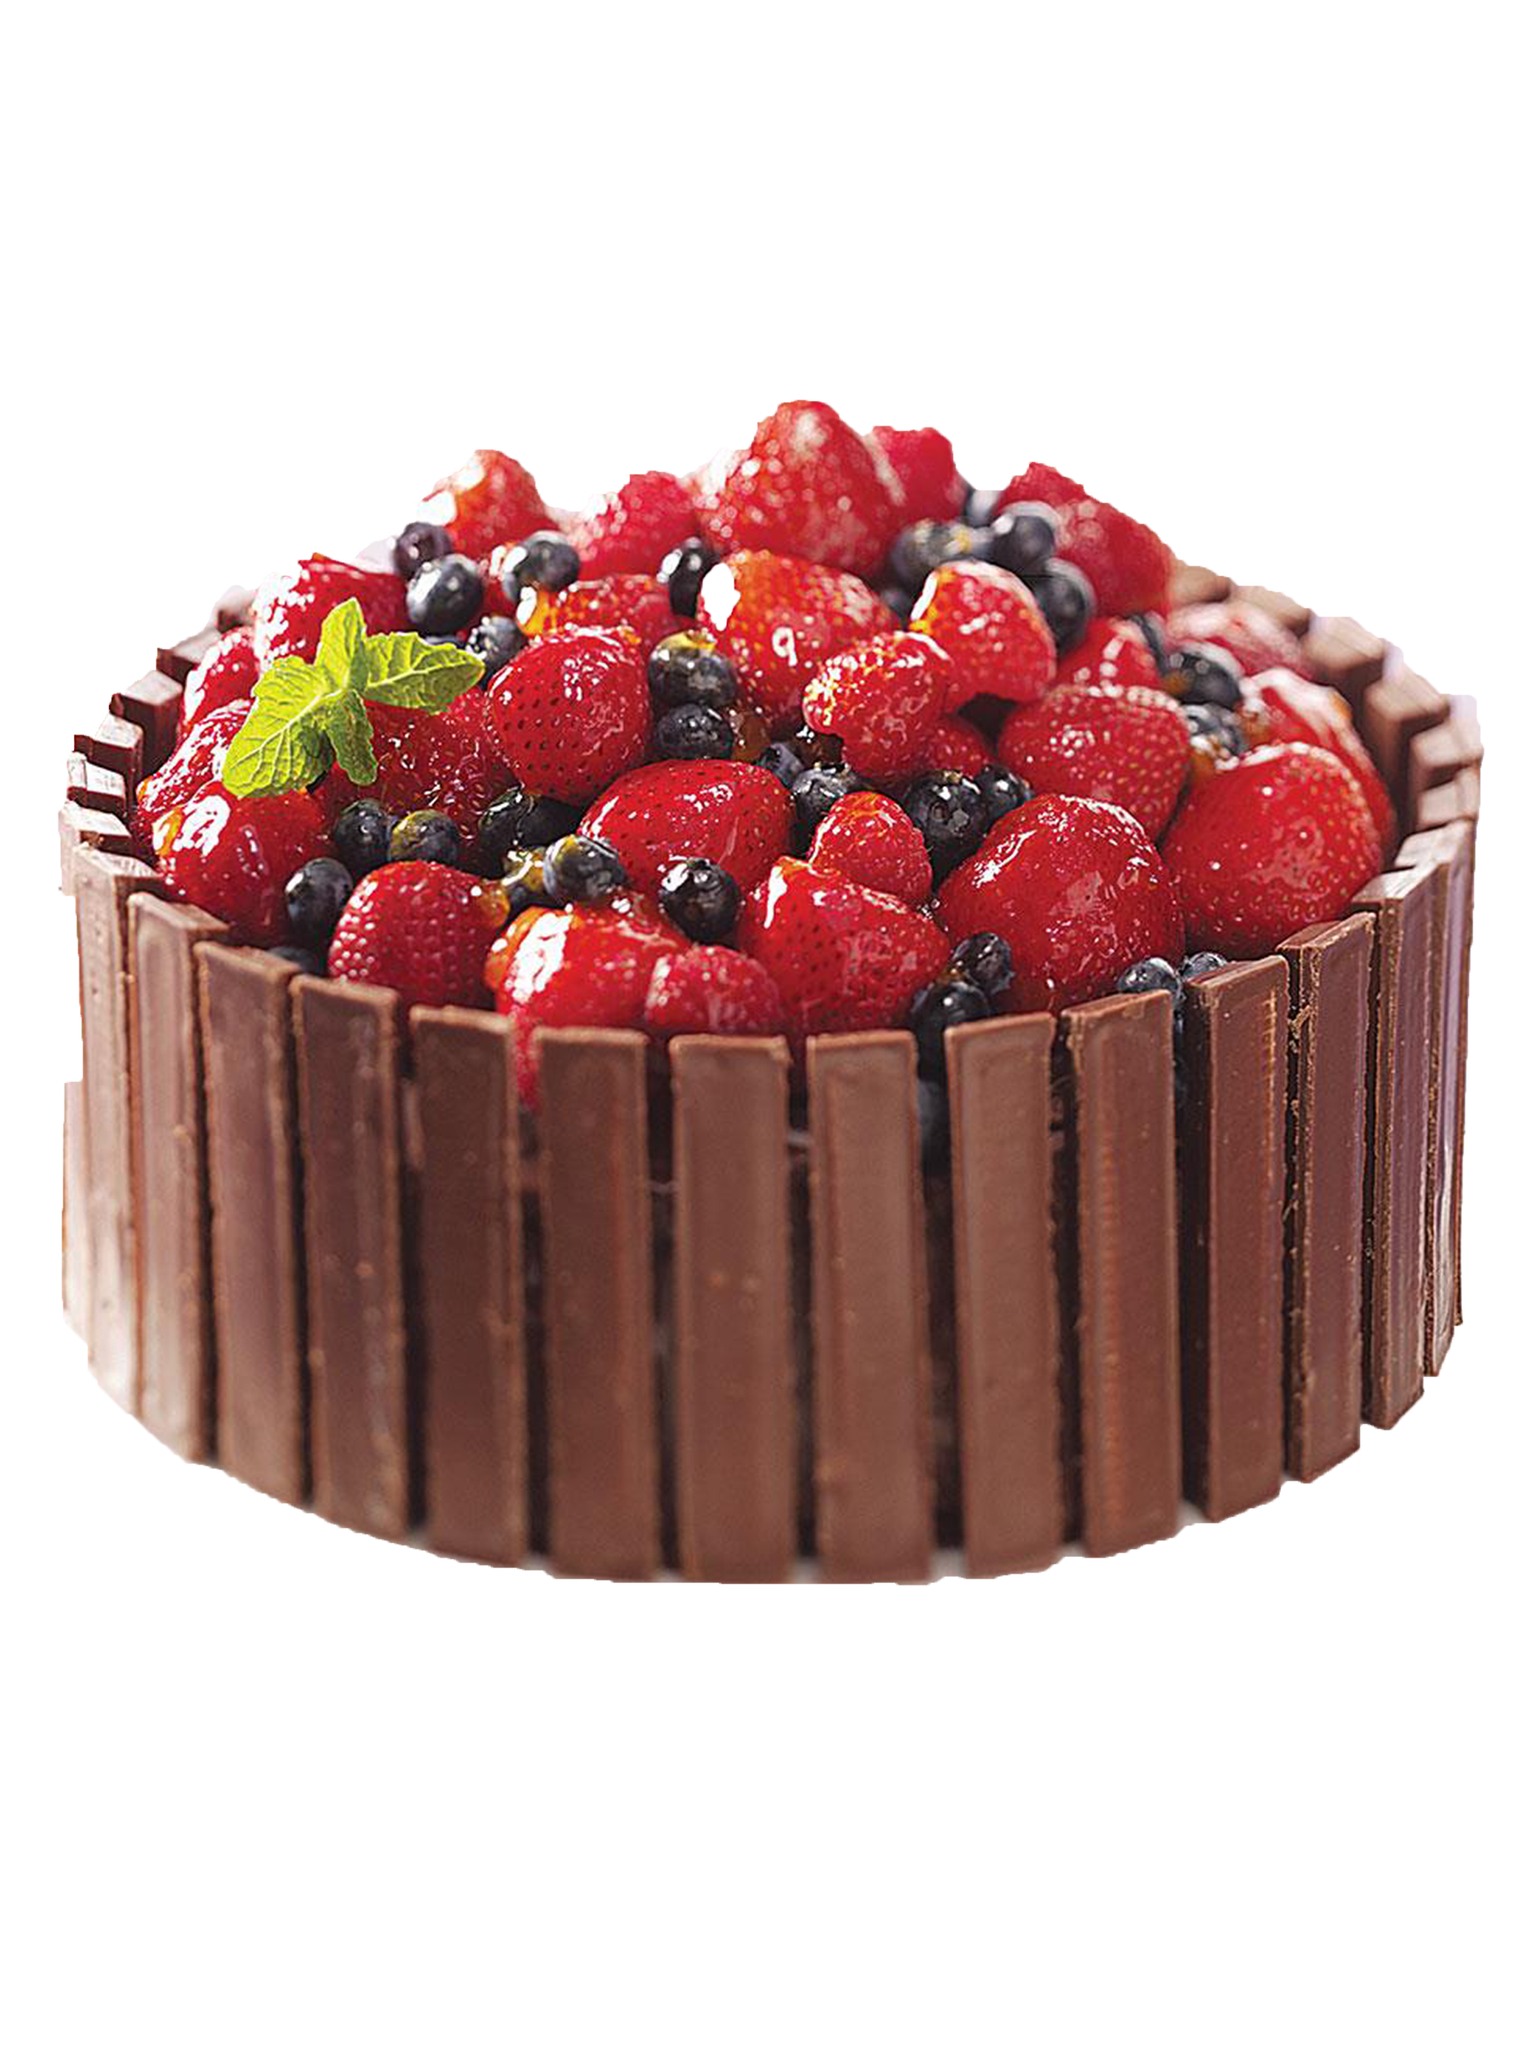 Kitkat & Mixed Berries Cake